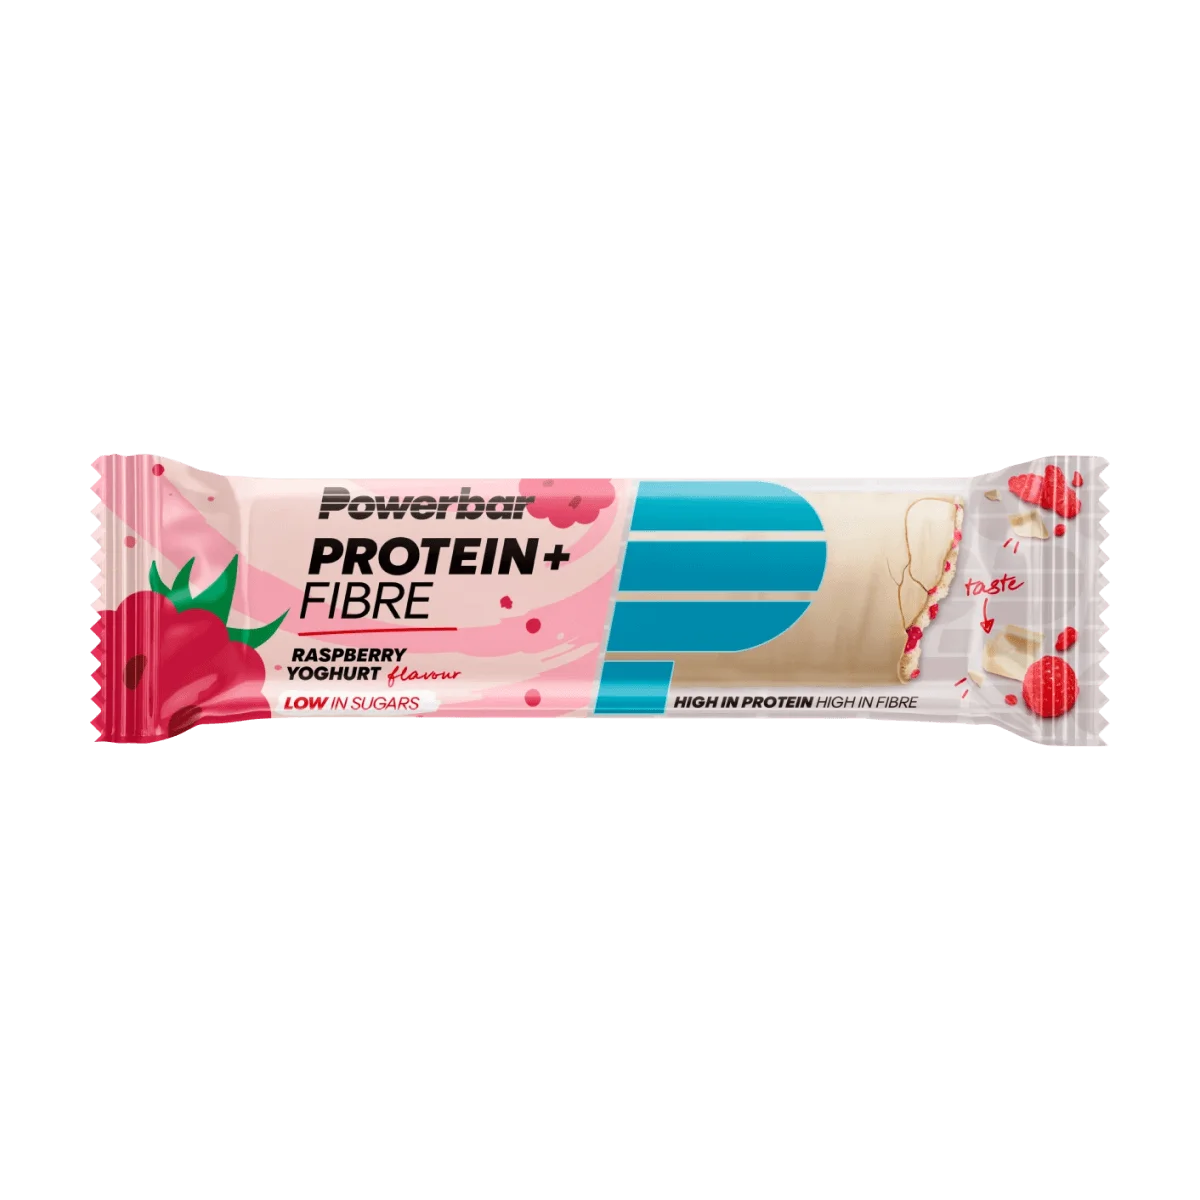 PowerBar Proteinriegel 30% Protein + Fibre, Raspberry Yoghurt Geschmack, 35 g